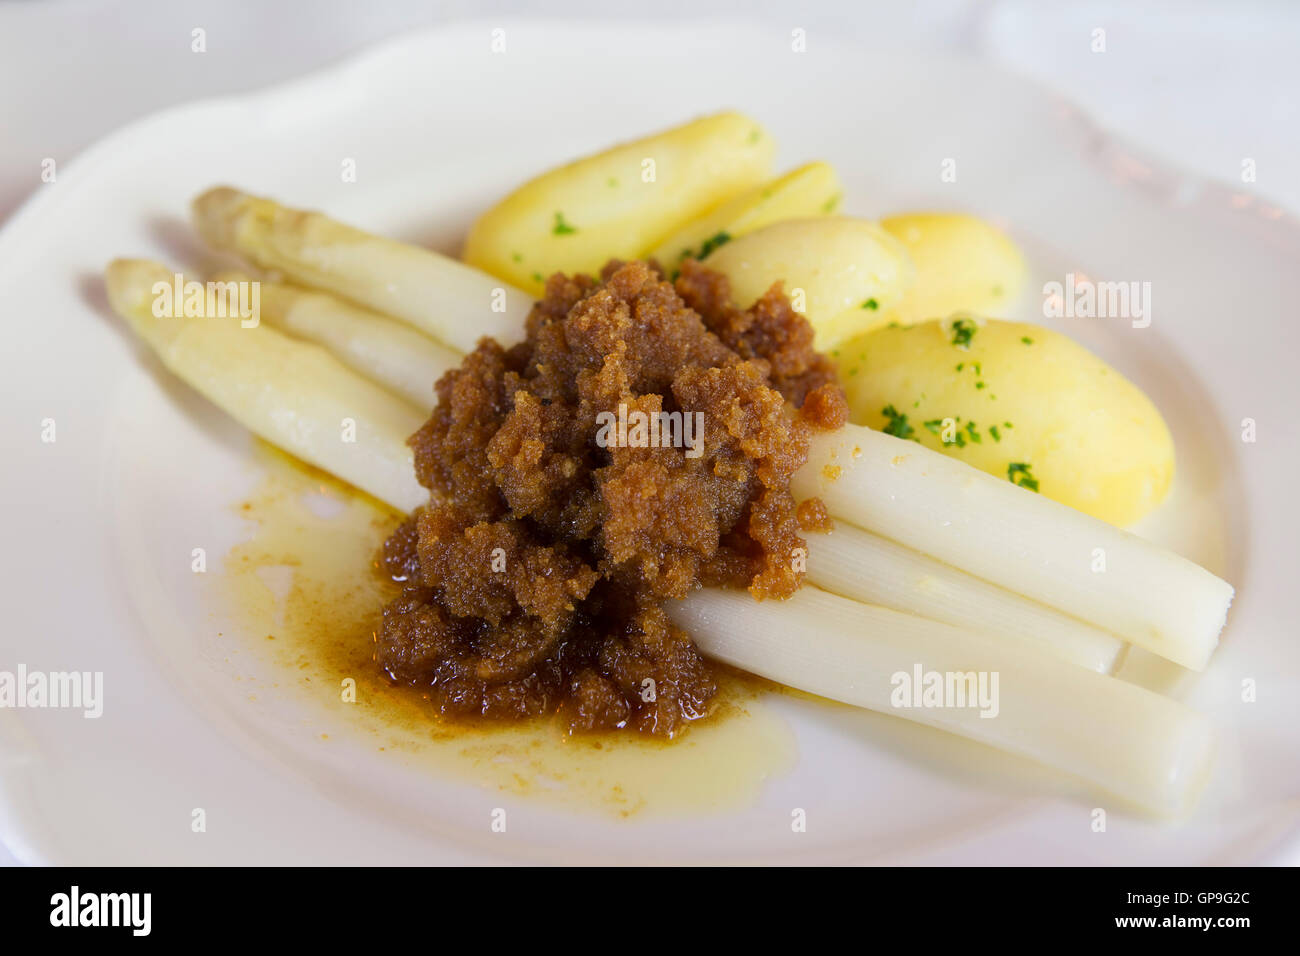 Asparagi bianchi è servito con patate lesse e mollica di pane imburrato in di Dresda, Germania. Foto Stock